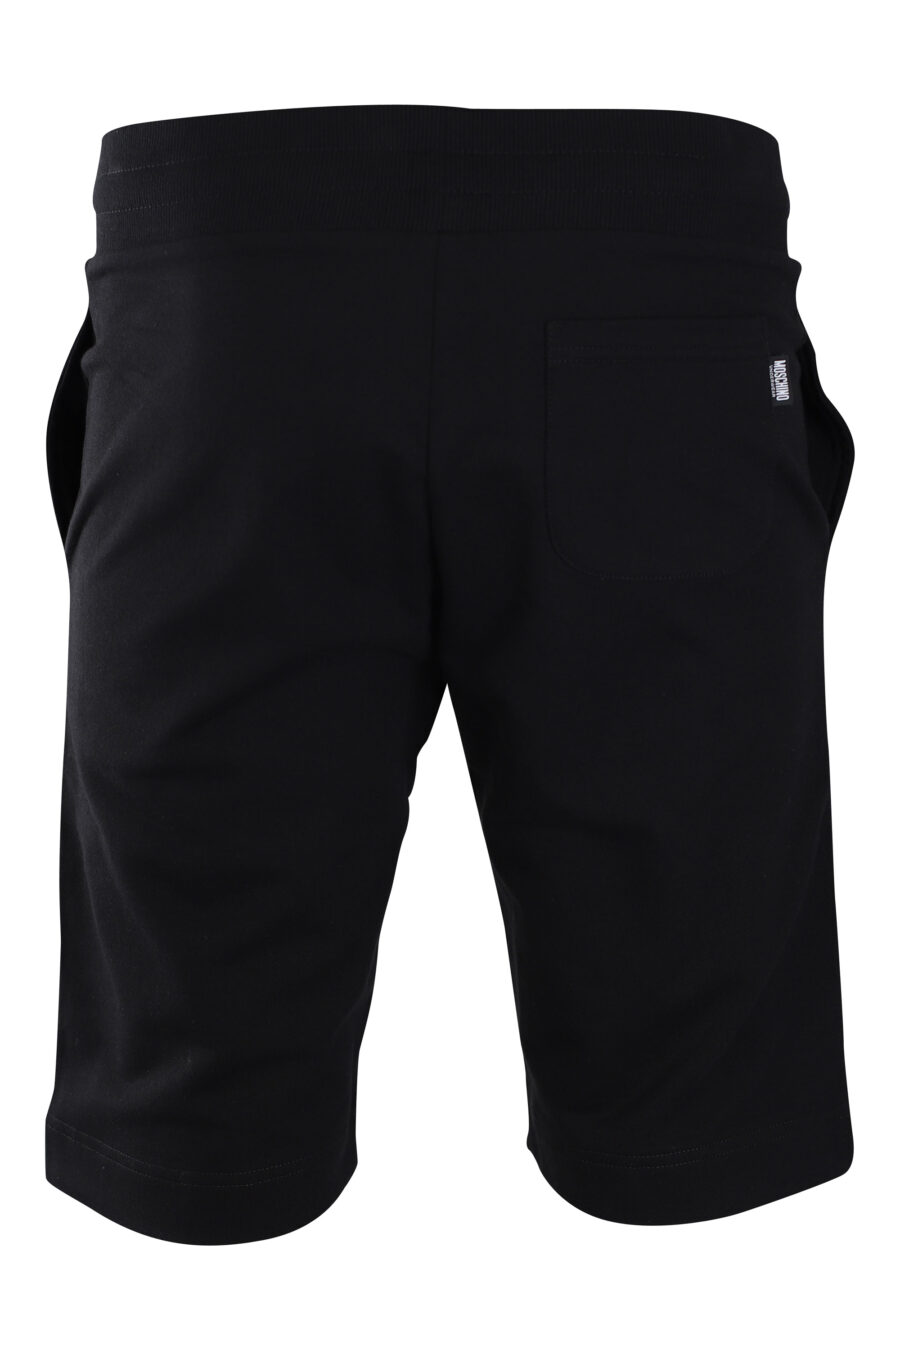 Pantalón de chándal corto negro con minilogo oso "underbear" - IMG 2233 1